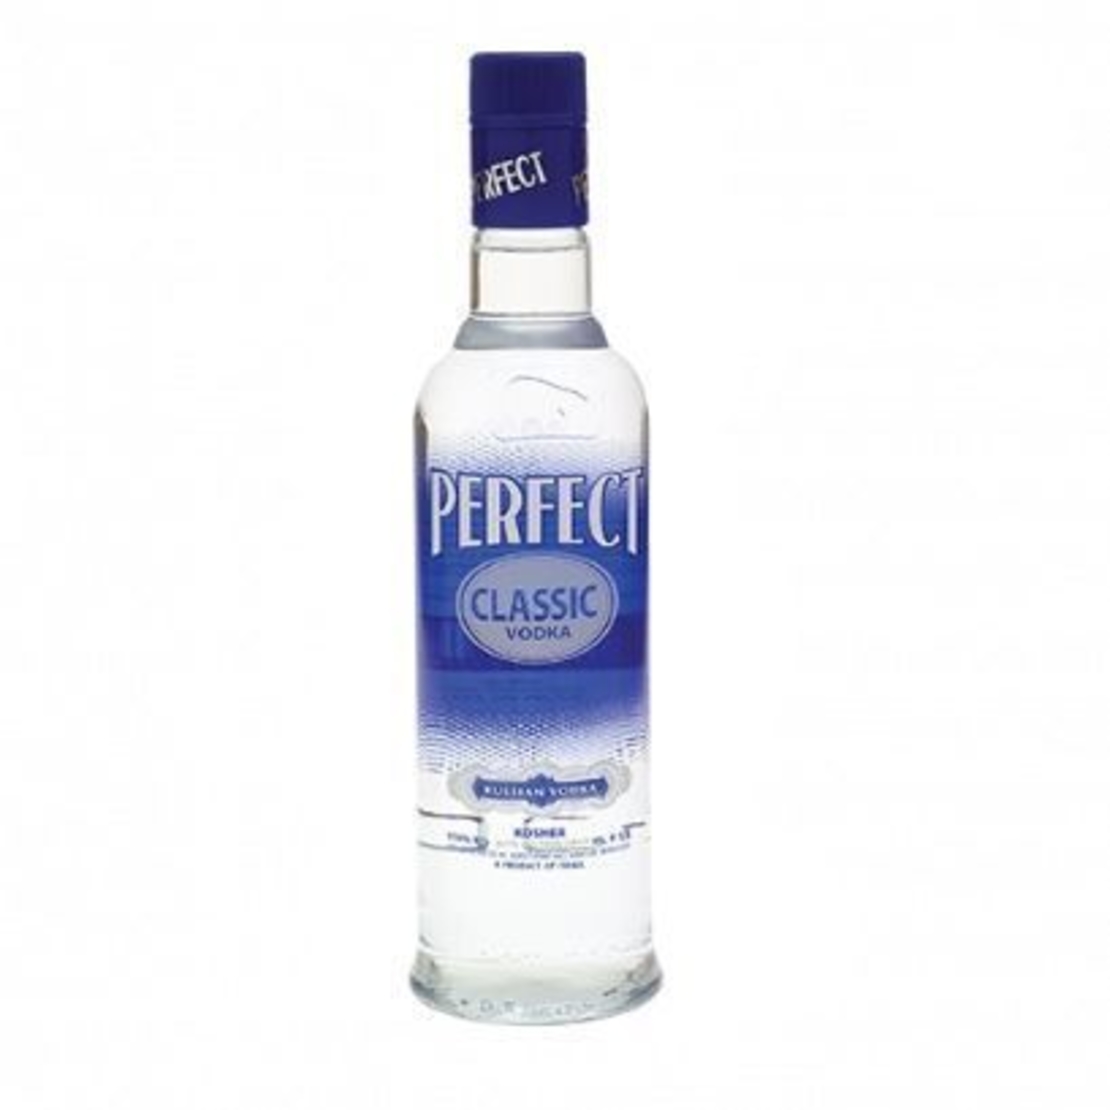 Perfect - Classic Vodka 1L